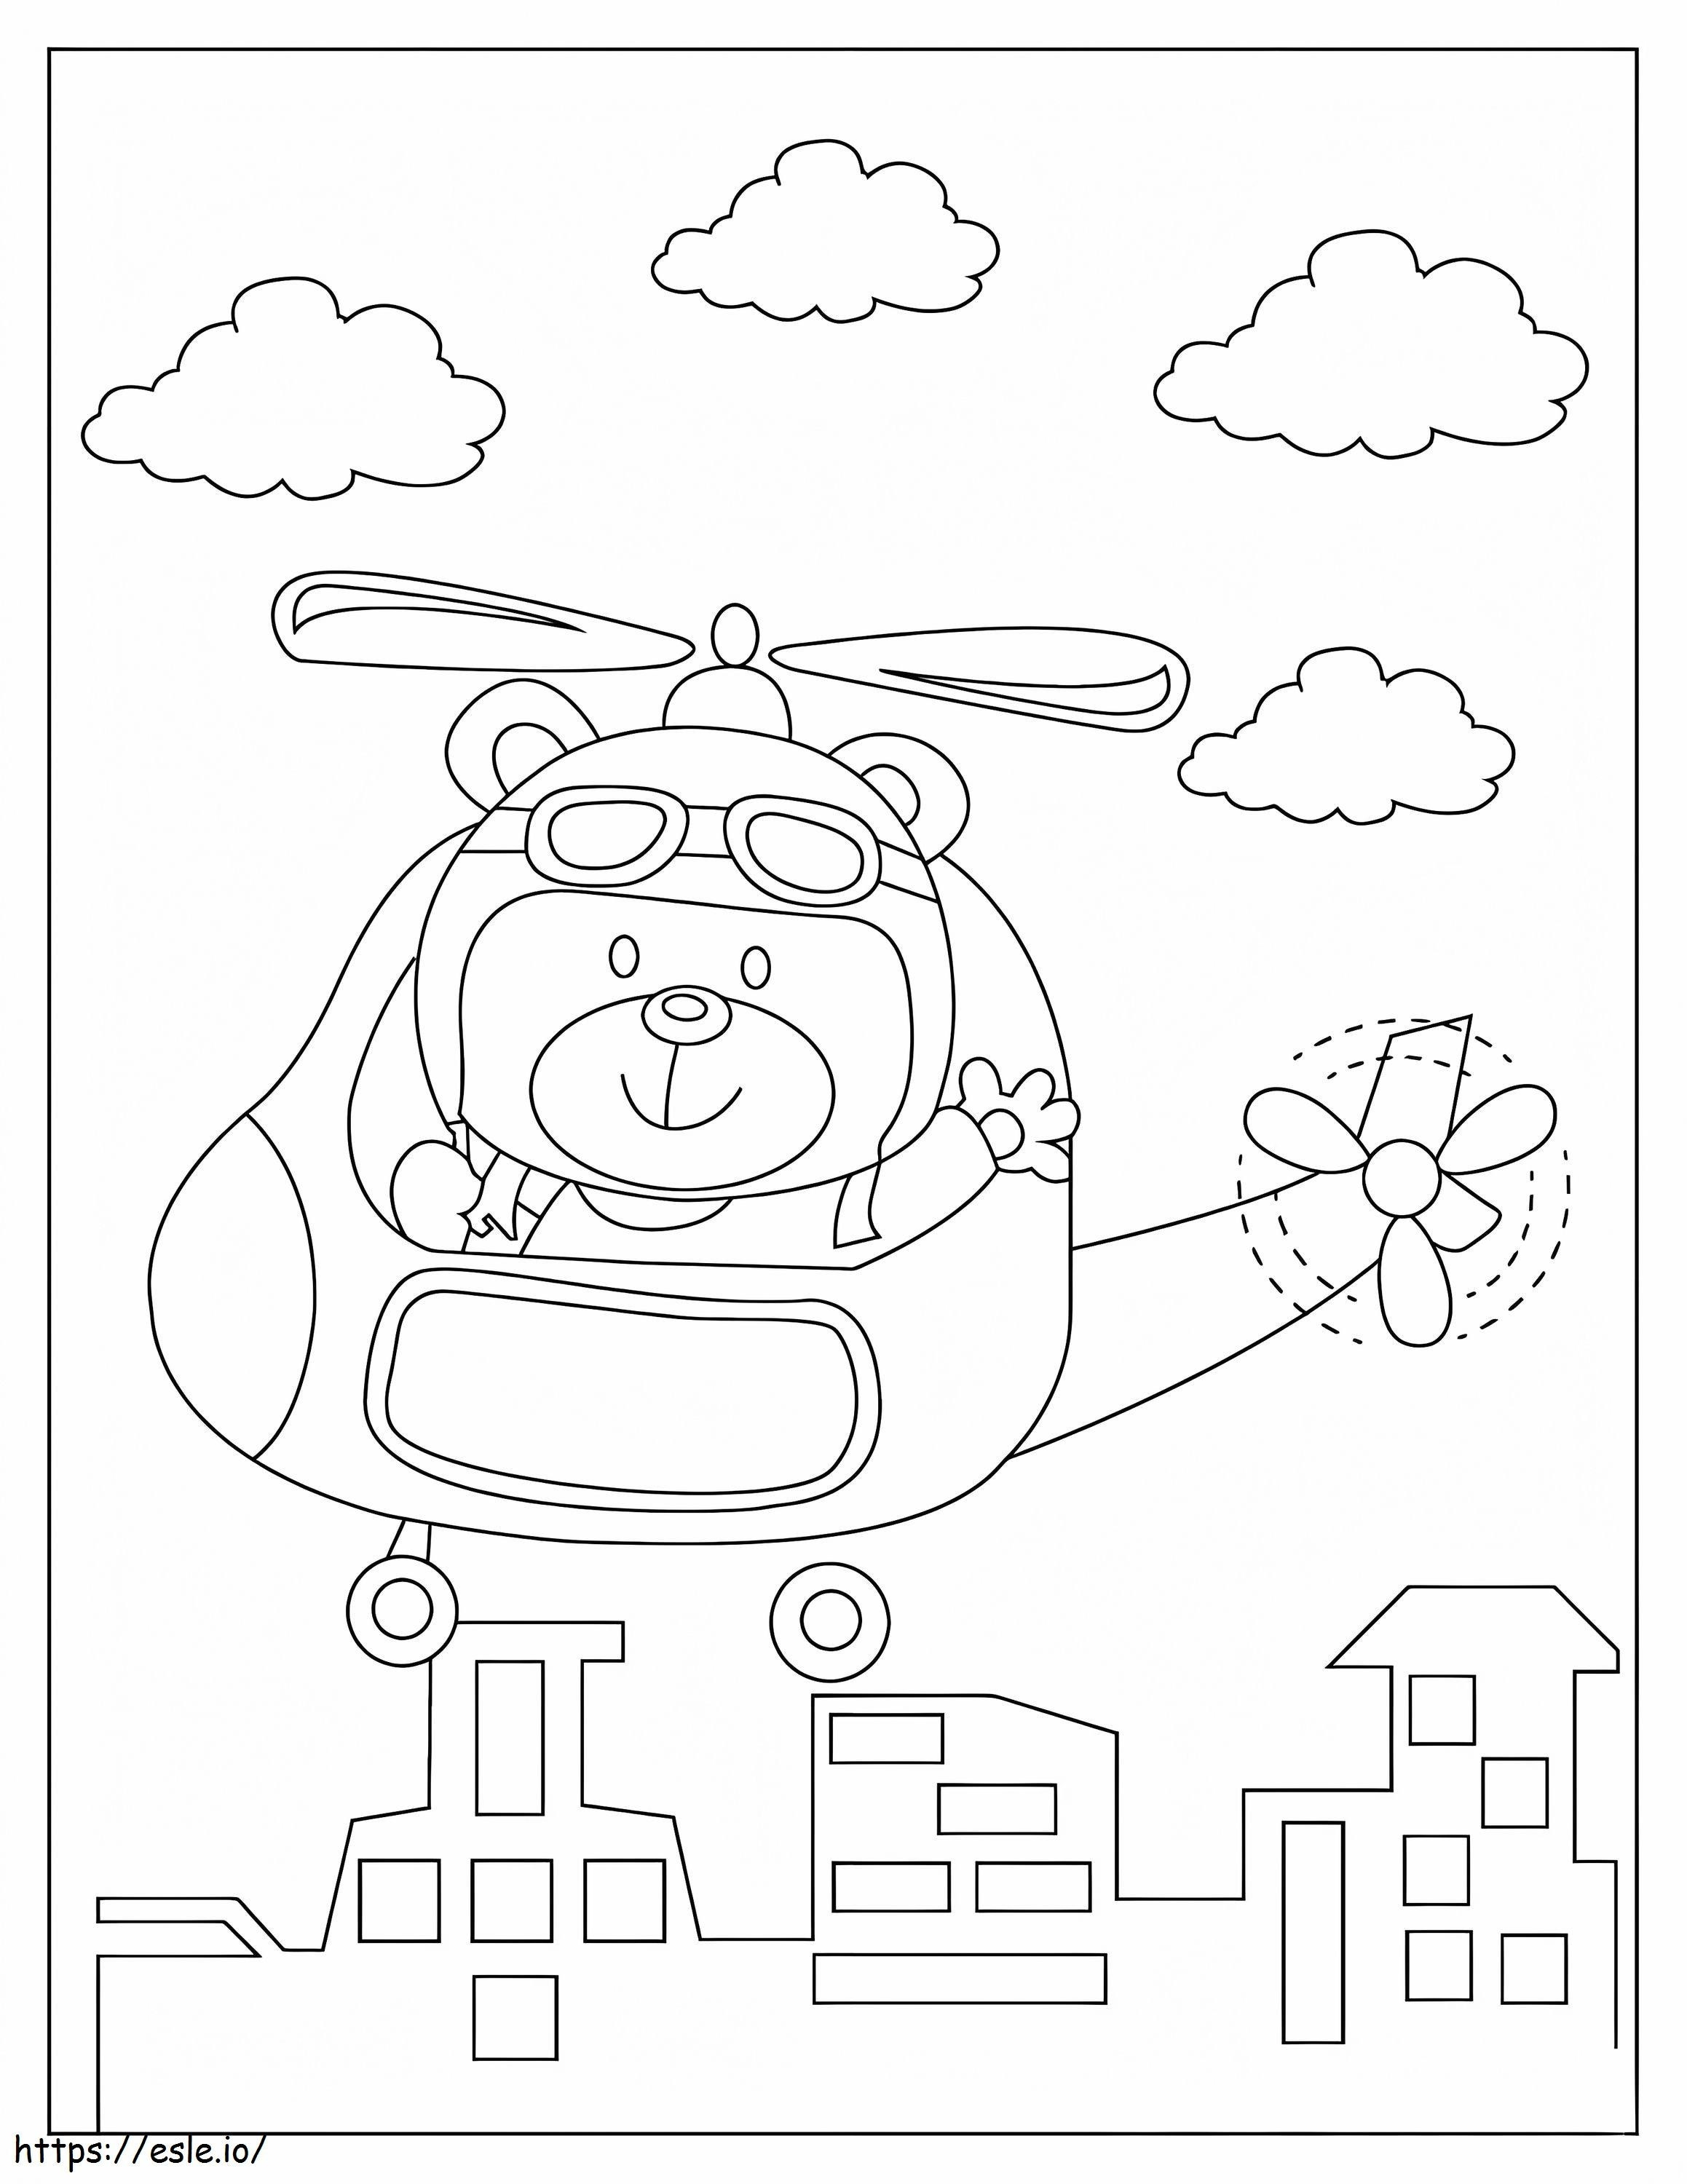 Ursul în elicopter de colorat